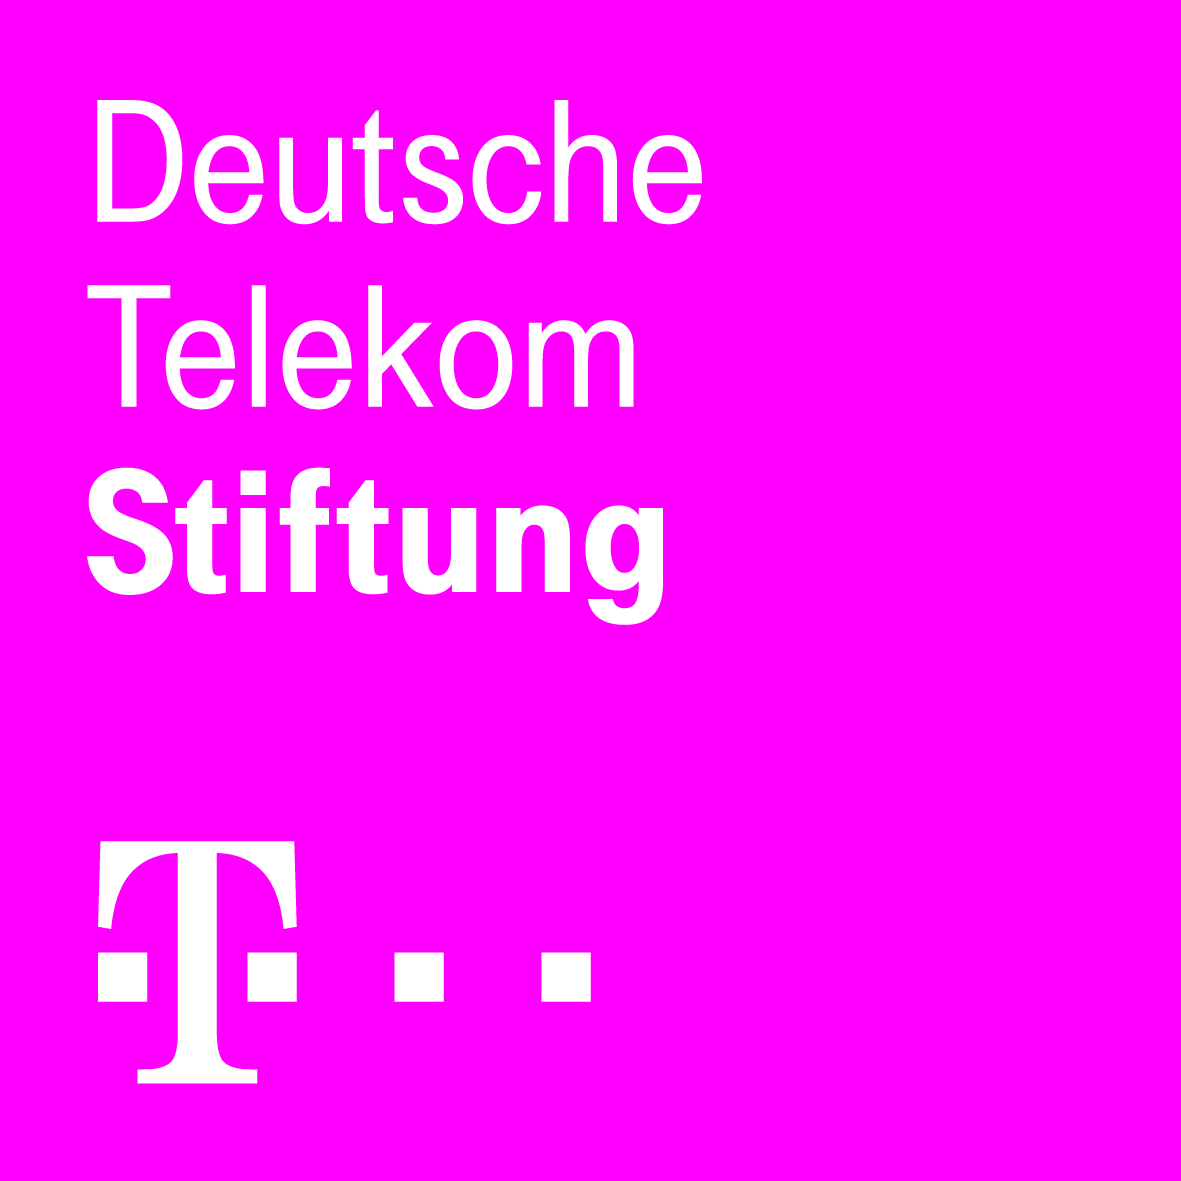 Unterstützt durch die Deutsche Telekom Stiftung